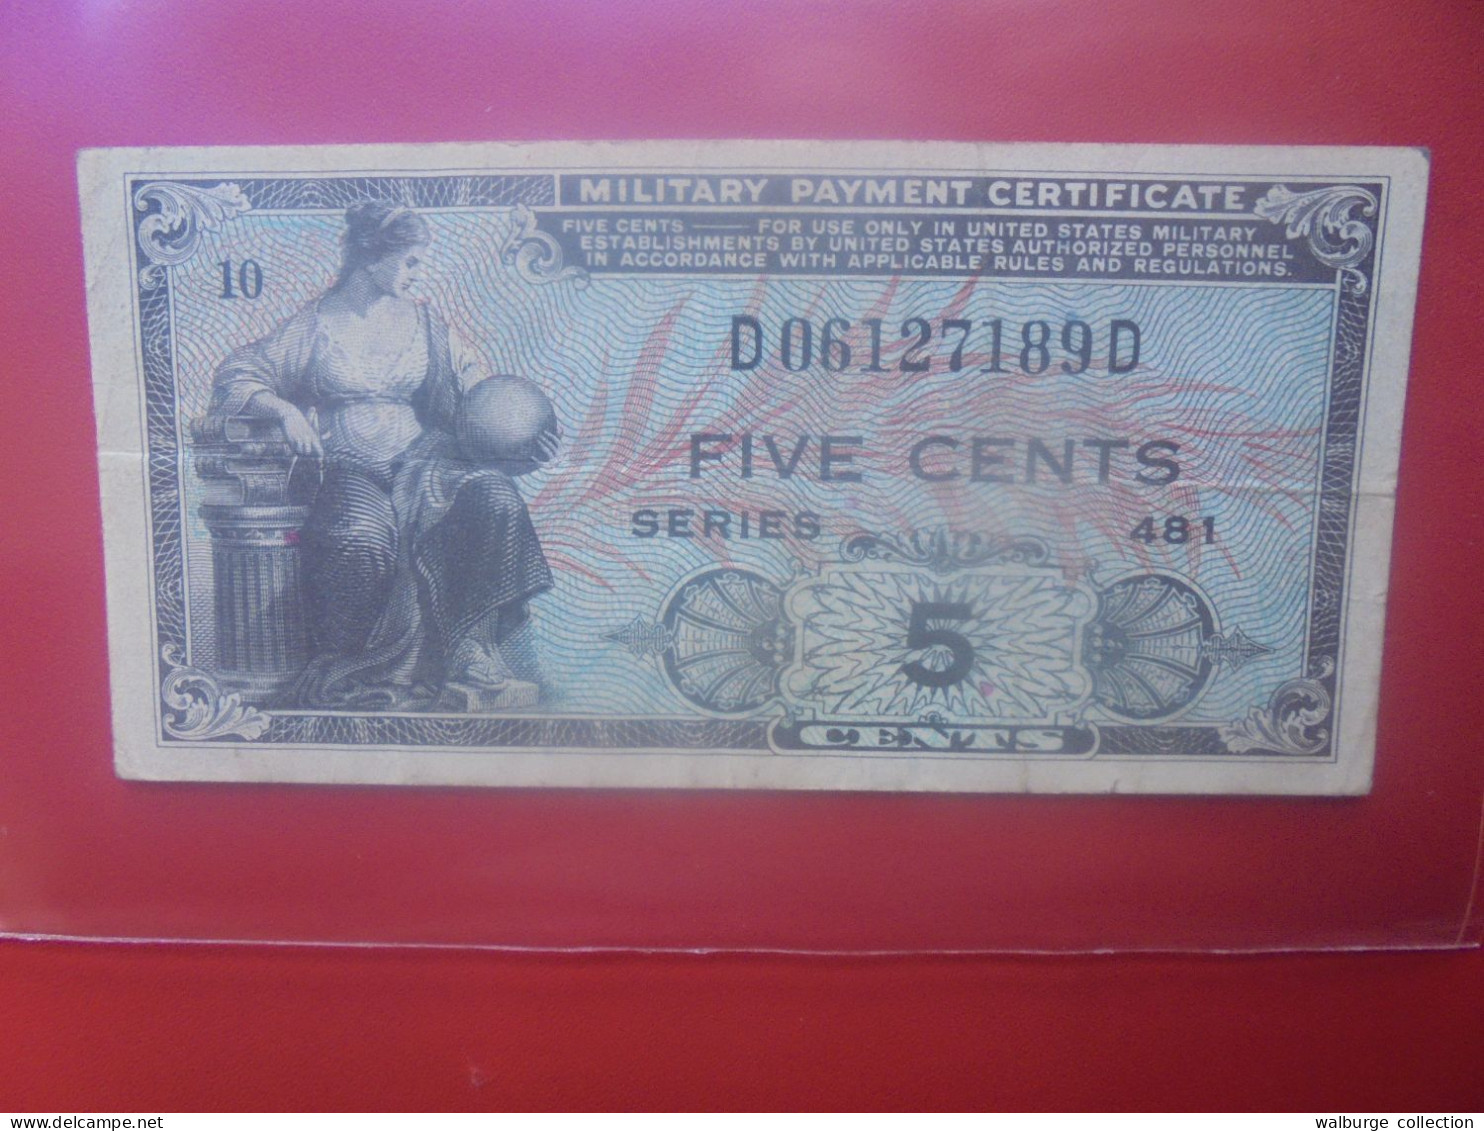 U.S.A (MILITARY) 5 Cents Série 481 (1951-54) Circuler (B.33) - 1951-1954 - Series 481